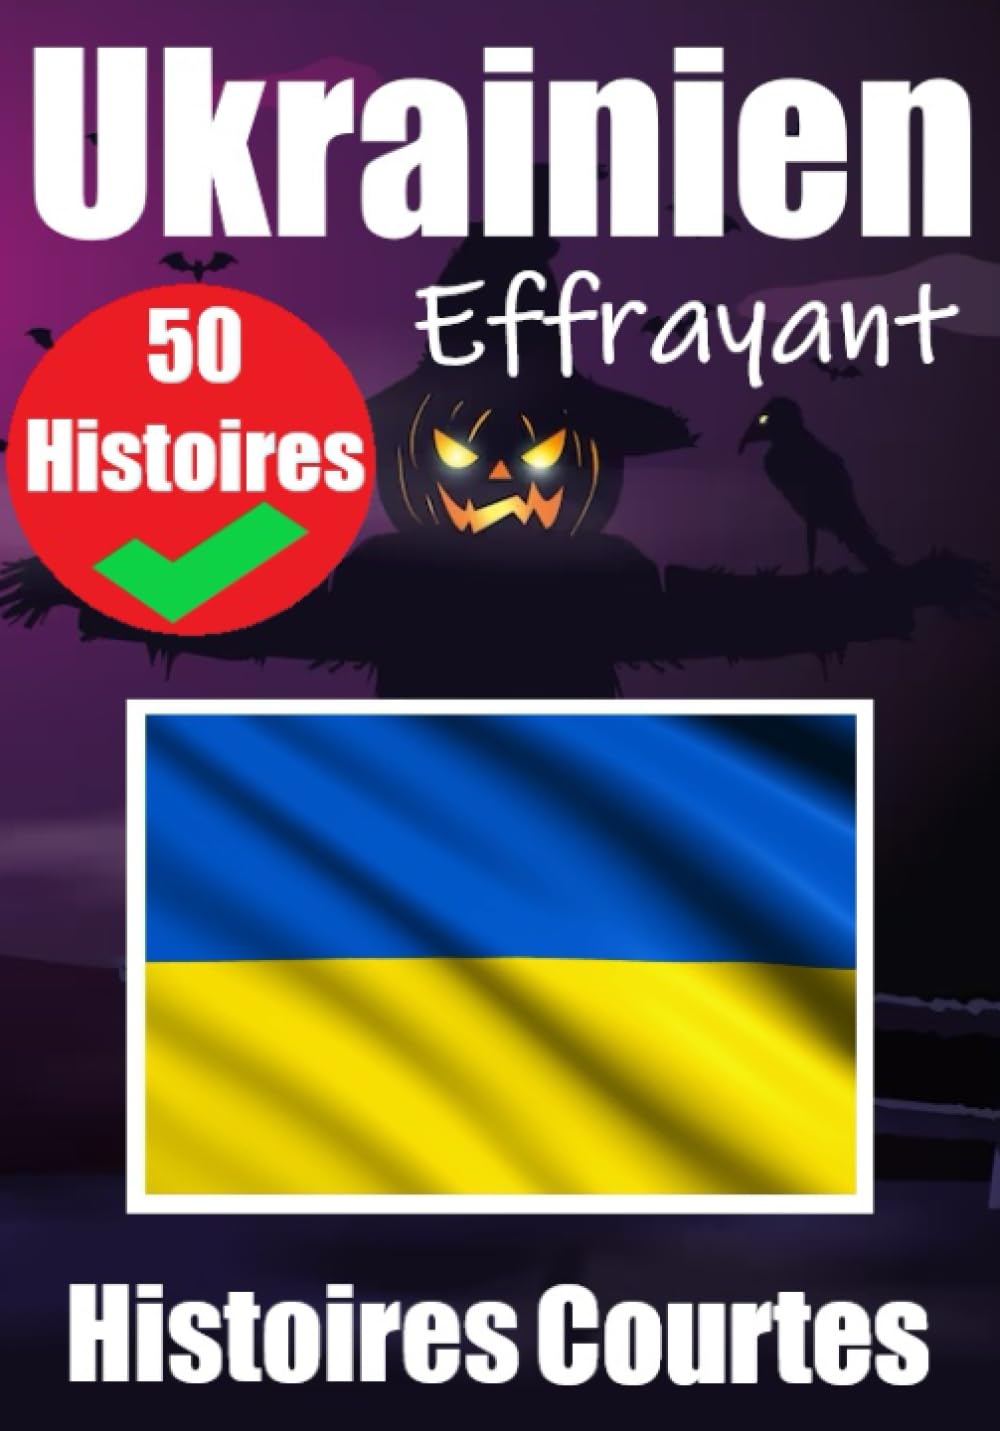 50 Courtes Histoires Effrayantes en Ukrainien - Skriuwer.com